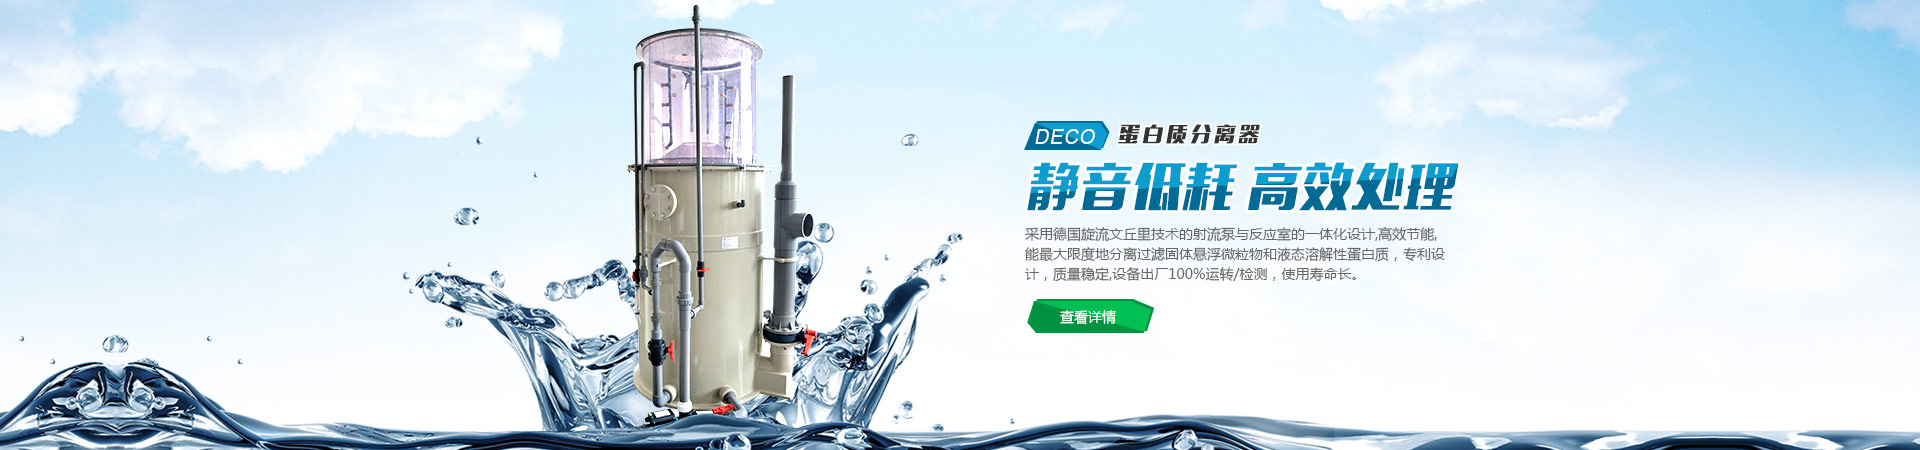 青州市金海源塑料包装制品有限公司
